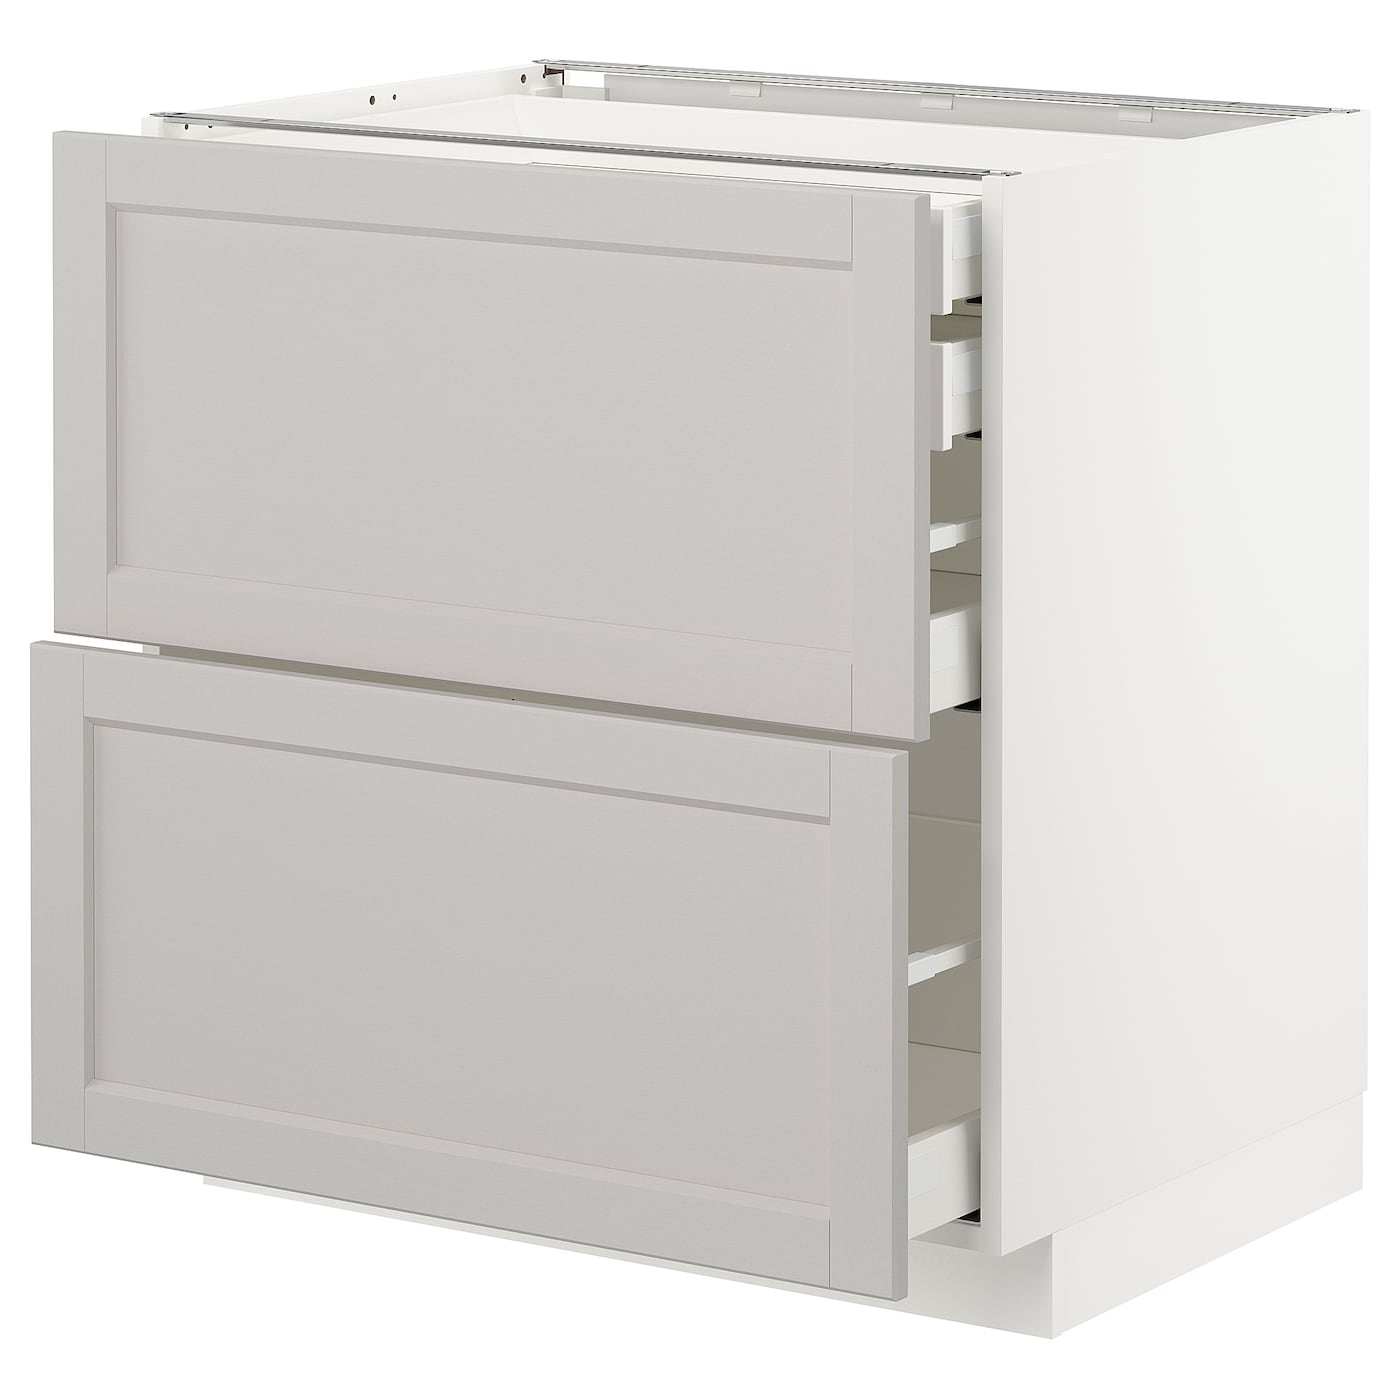 Напольный шкаф  - IKEA METOD MAXIMERA, 88x61,9x80см, белый/светло-серый, МЕТОД МАКСИМЕРА ИКЕА